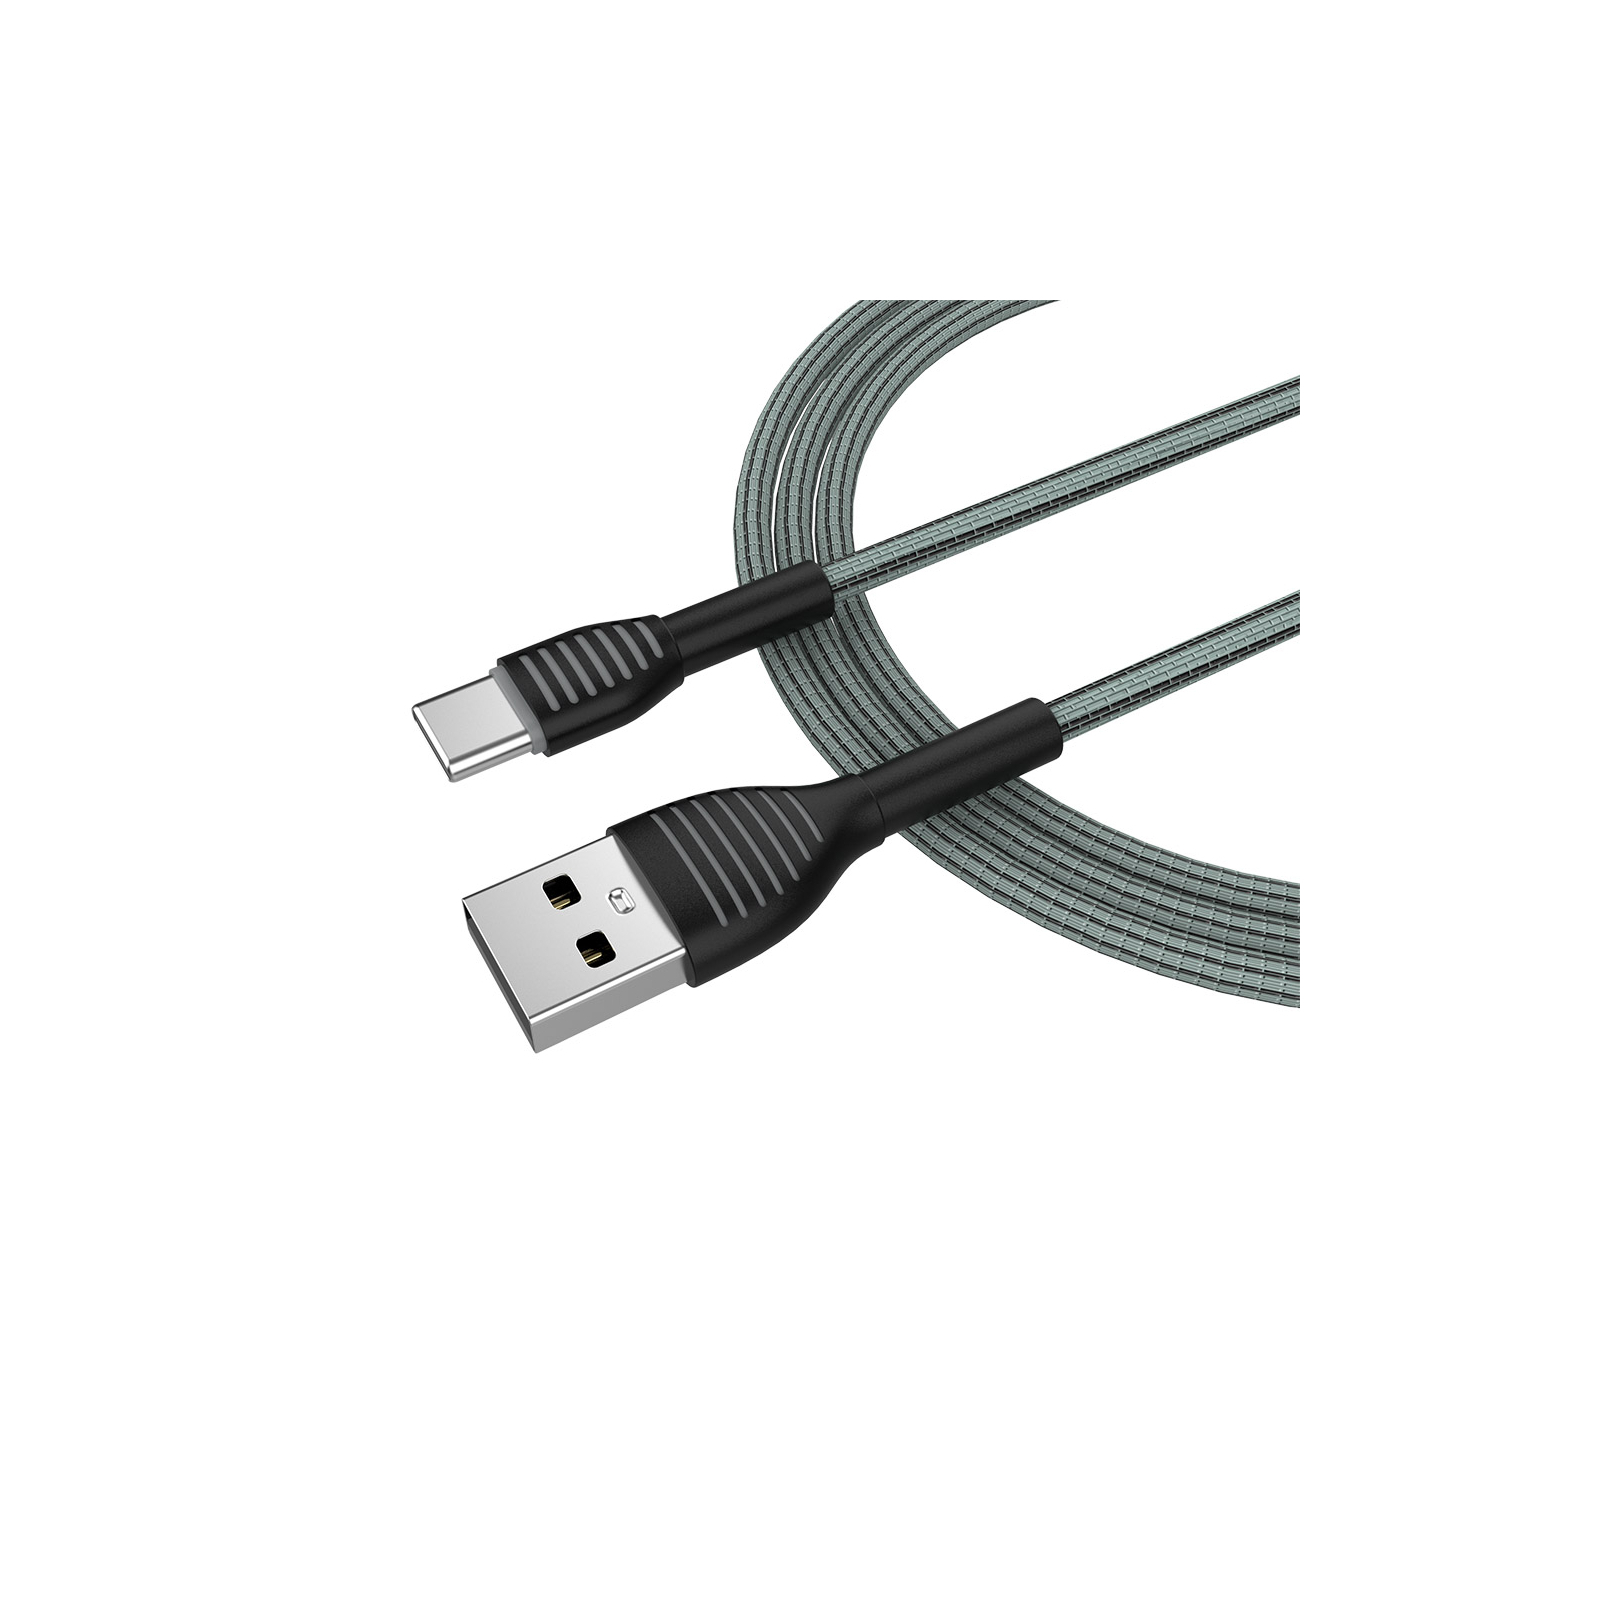 Дата кабель USB 2.0 AM to Type-C 1.0m ColorWay (CW-CBUC041-GR) изображение 3